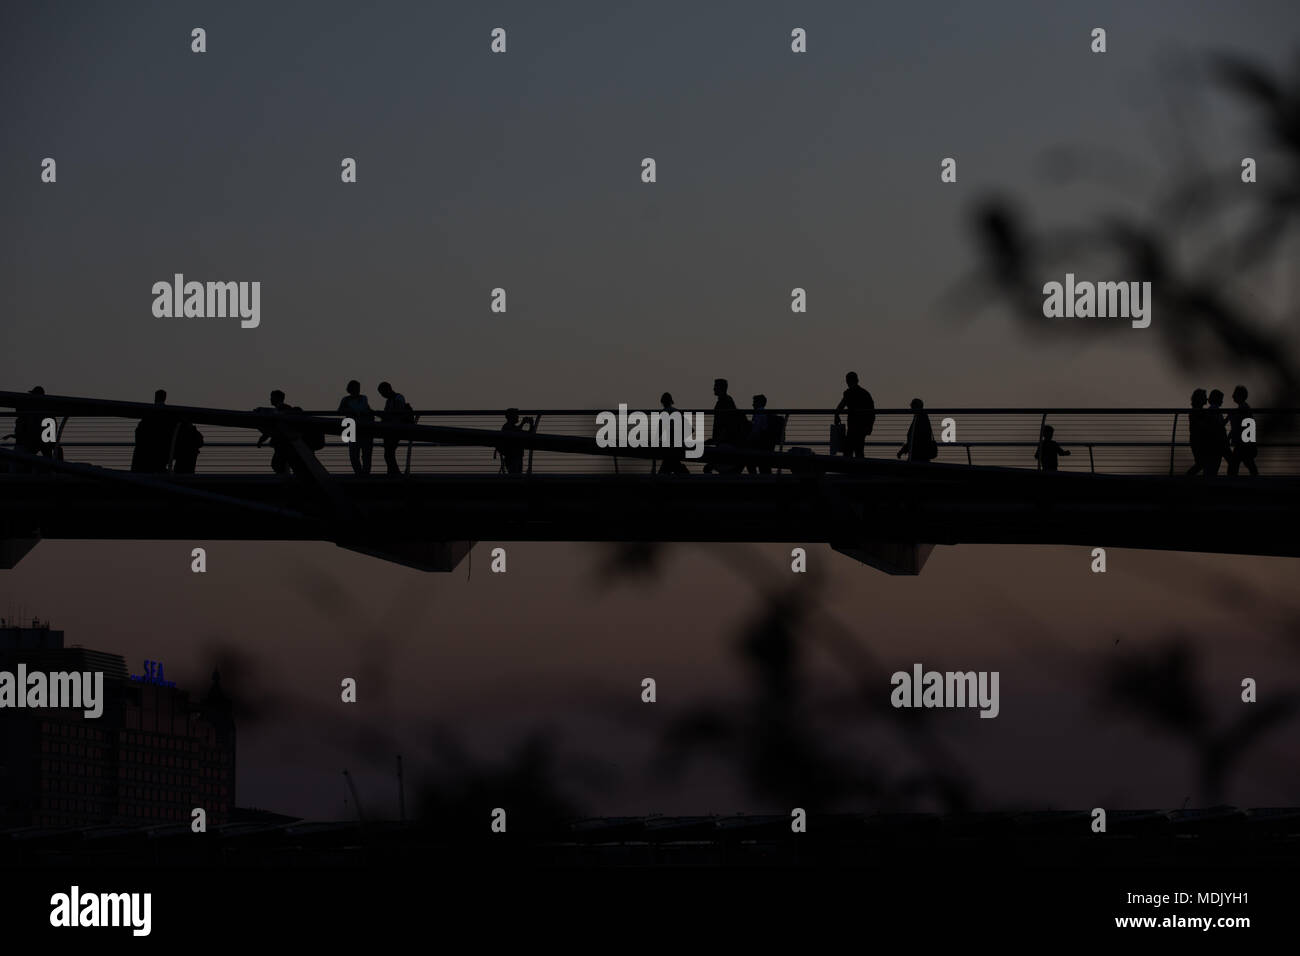 Londres, Royaume-Uni. 19 avril, 2018. Météo France : magnifique coucher de soleil sur la Tamise, avec Millennium Bridge en silhouette à Londres, Royaume-Uni Crédit : Carol MoirAlamy Live News Stock Photo Banque D'Images